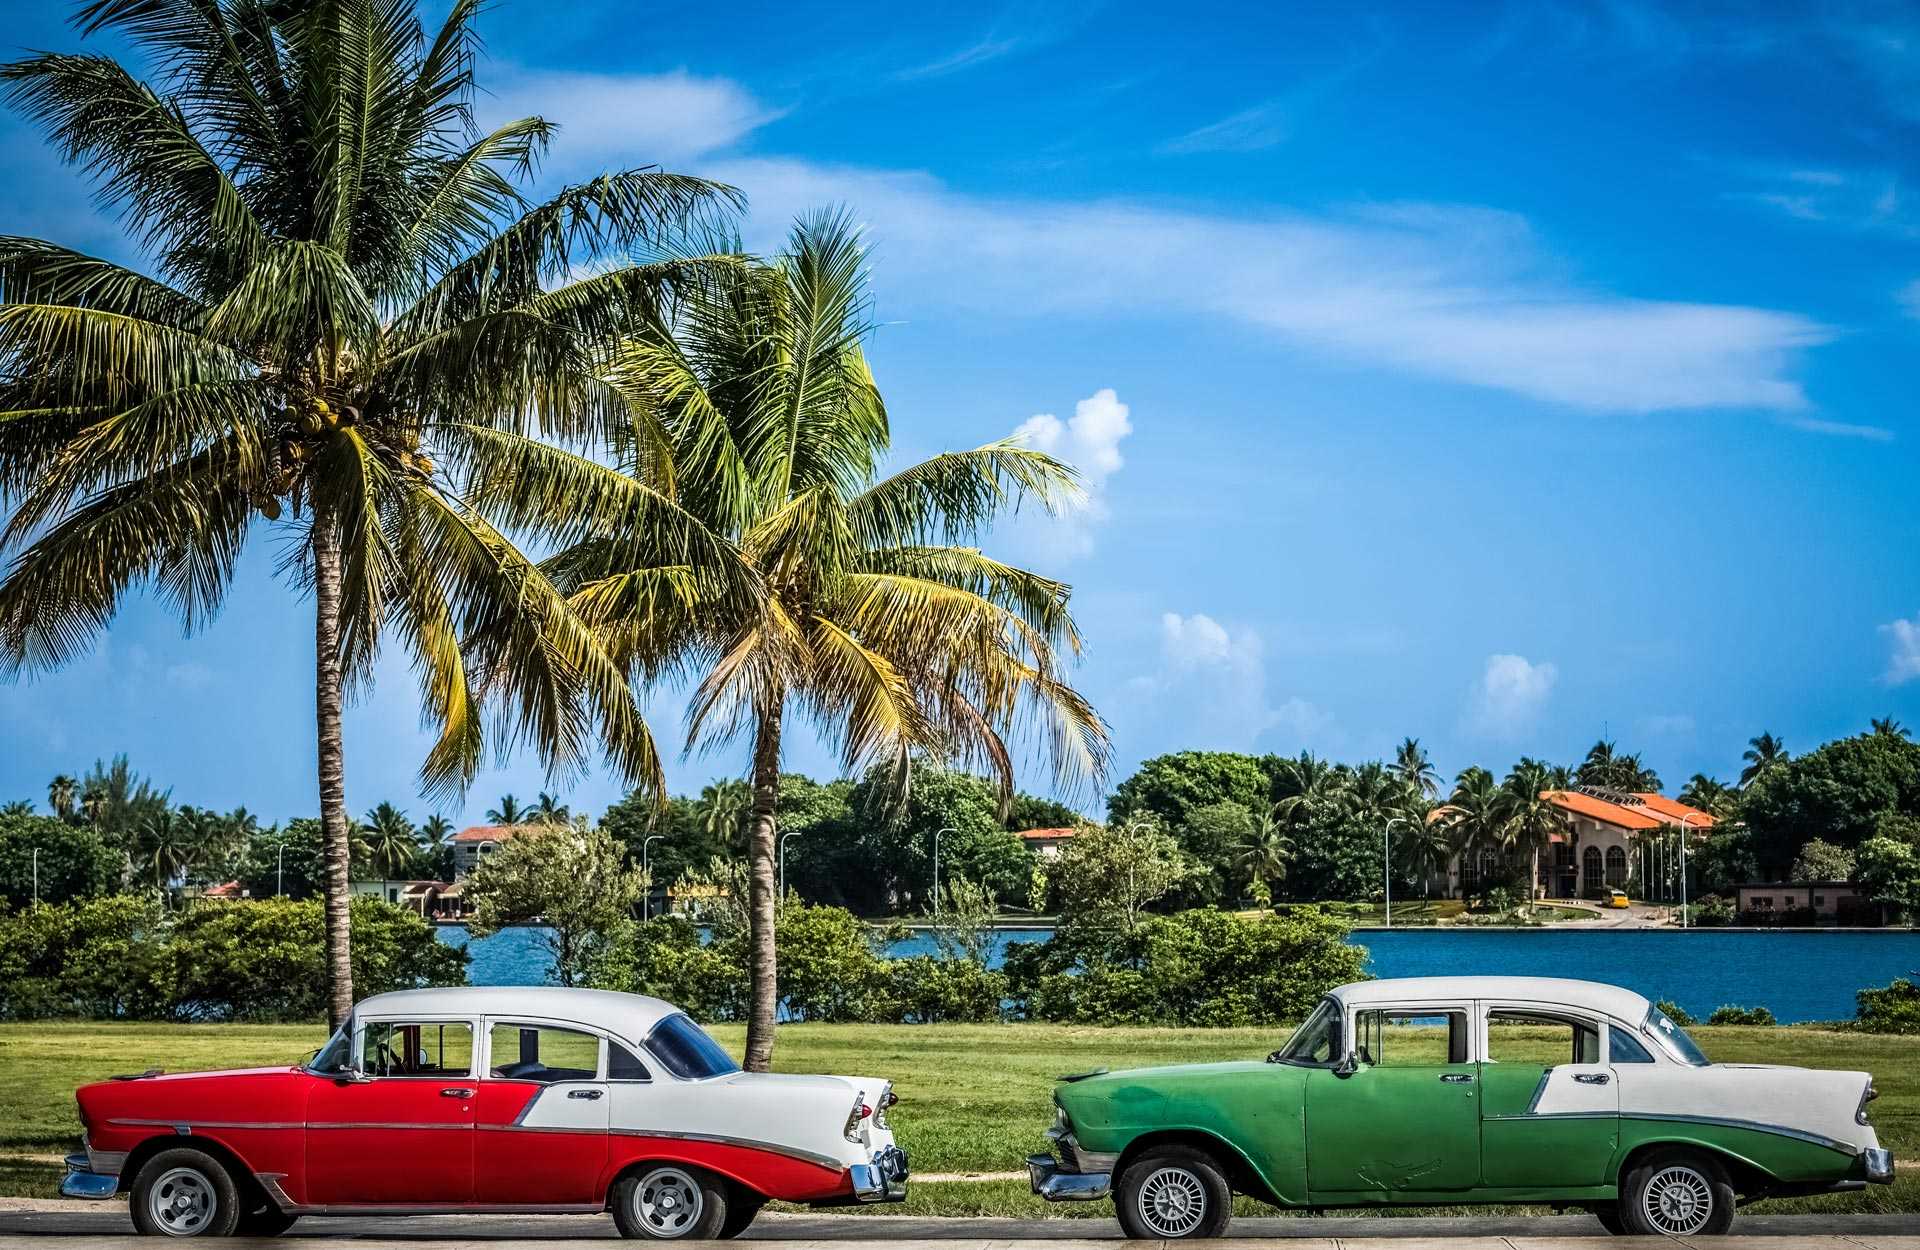 Vieilles voitures américaines garées sous les palmiers, à Cuba